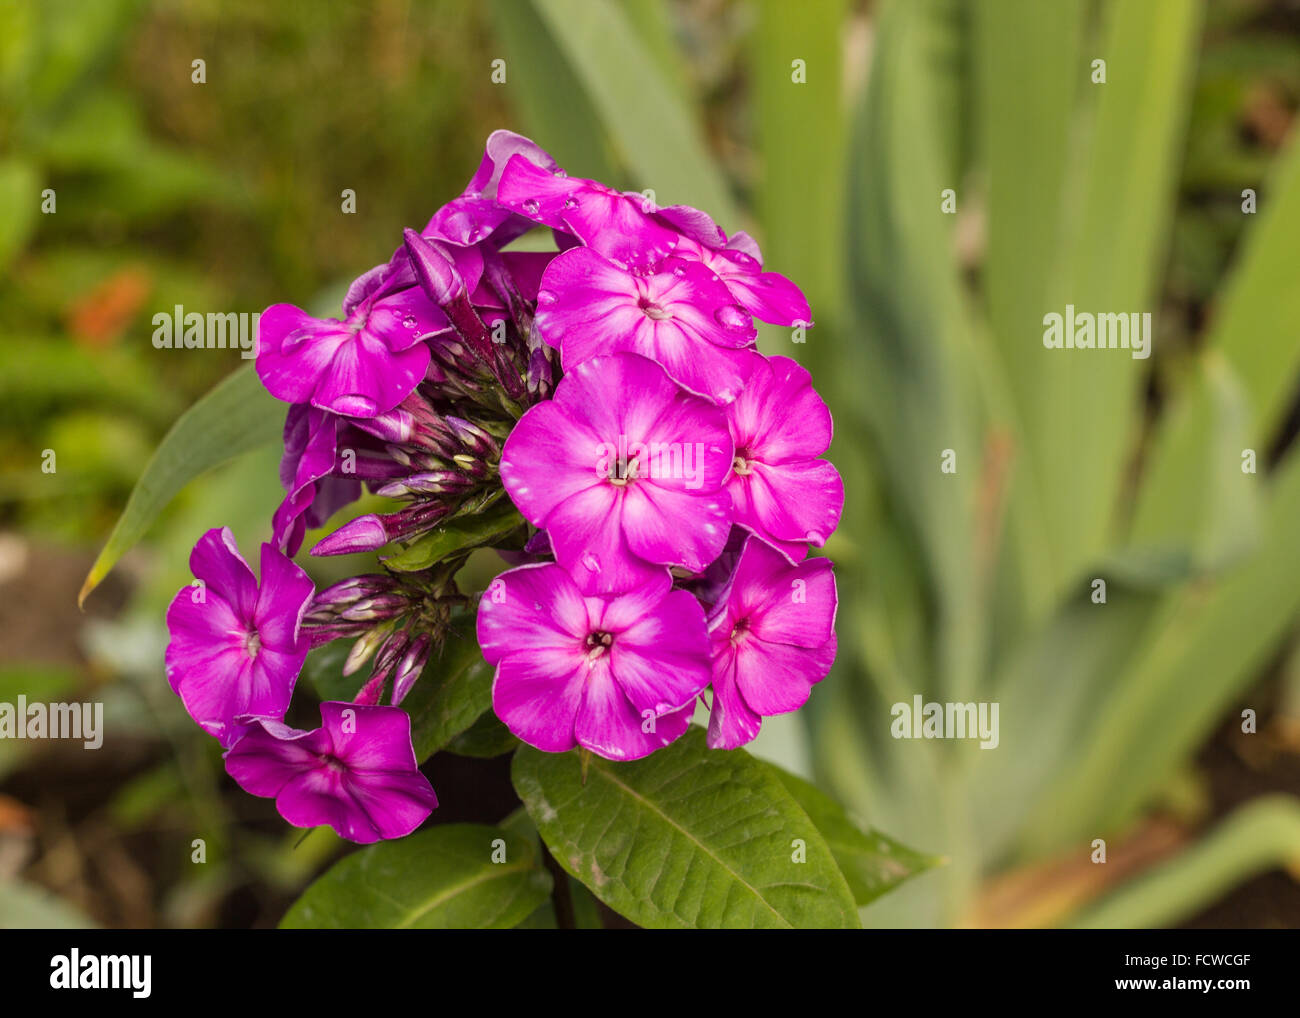 Closeup of a Garden Phlox flower Stock Photo